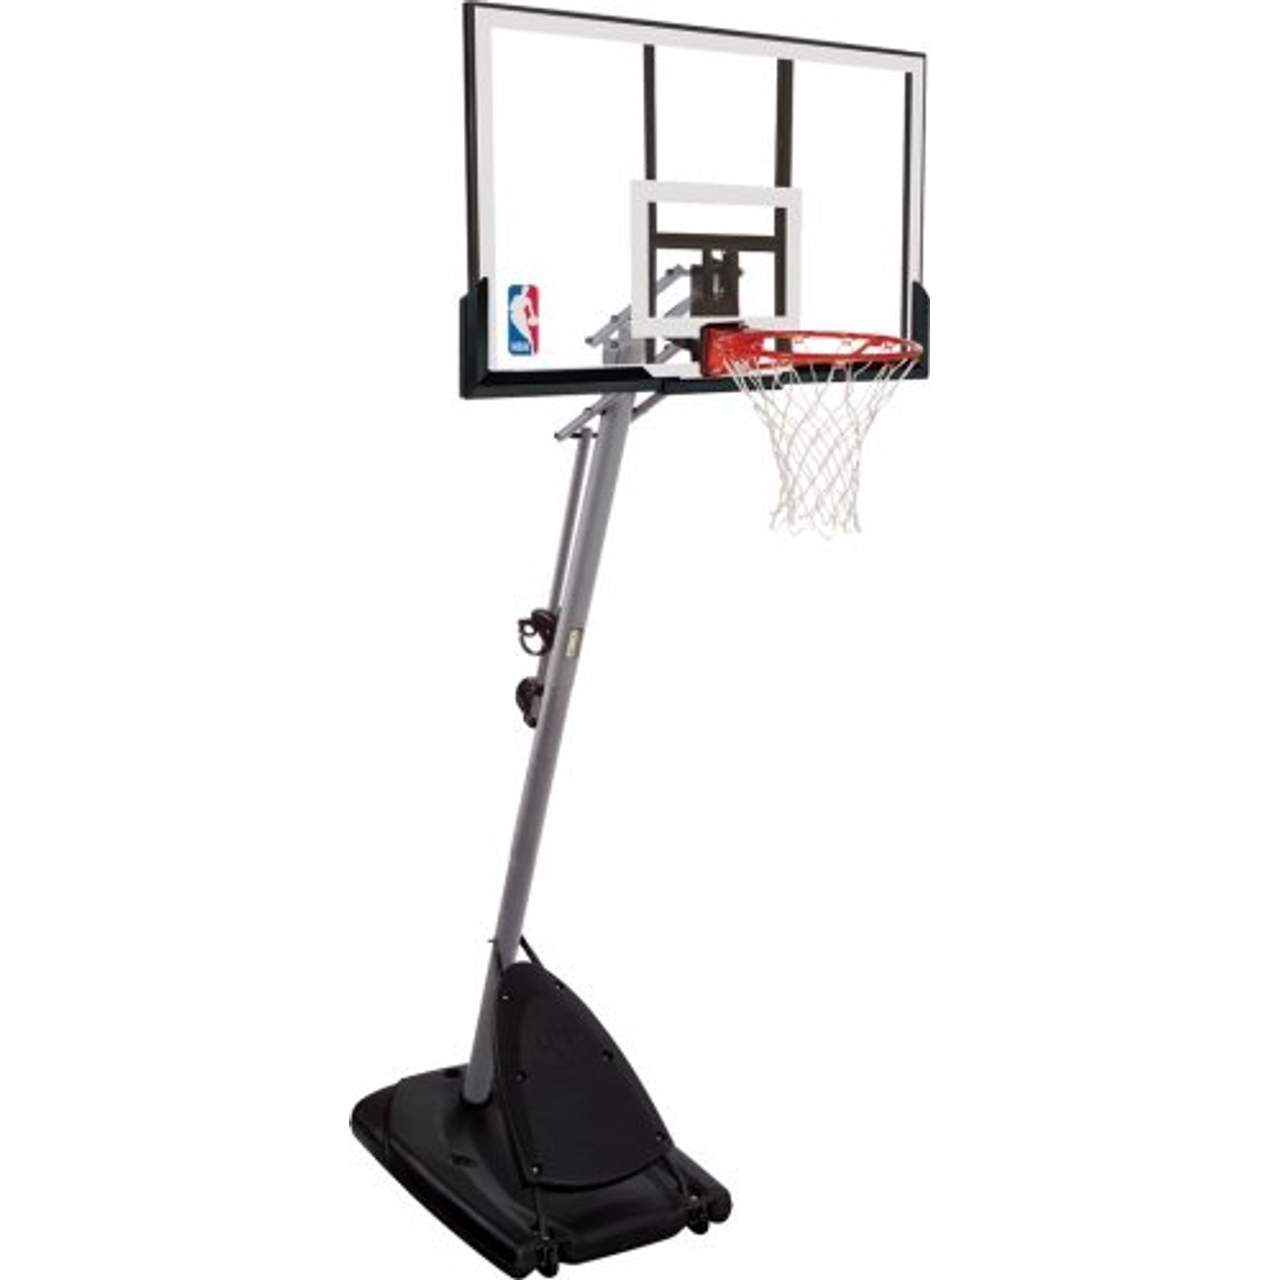 Spalding Basketballanlage NBA Portable